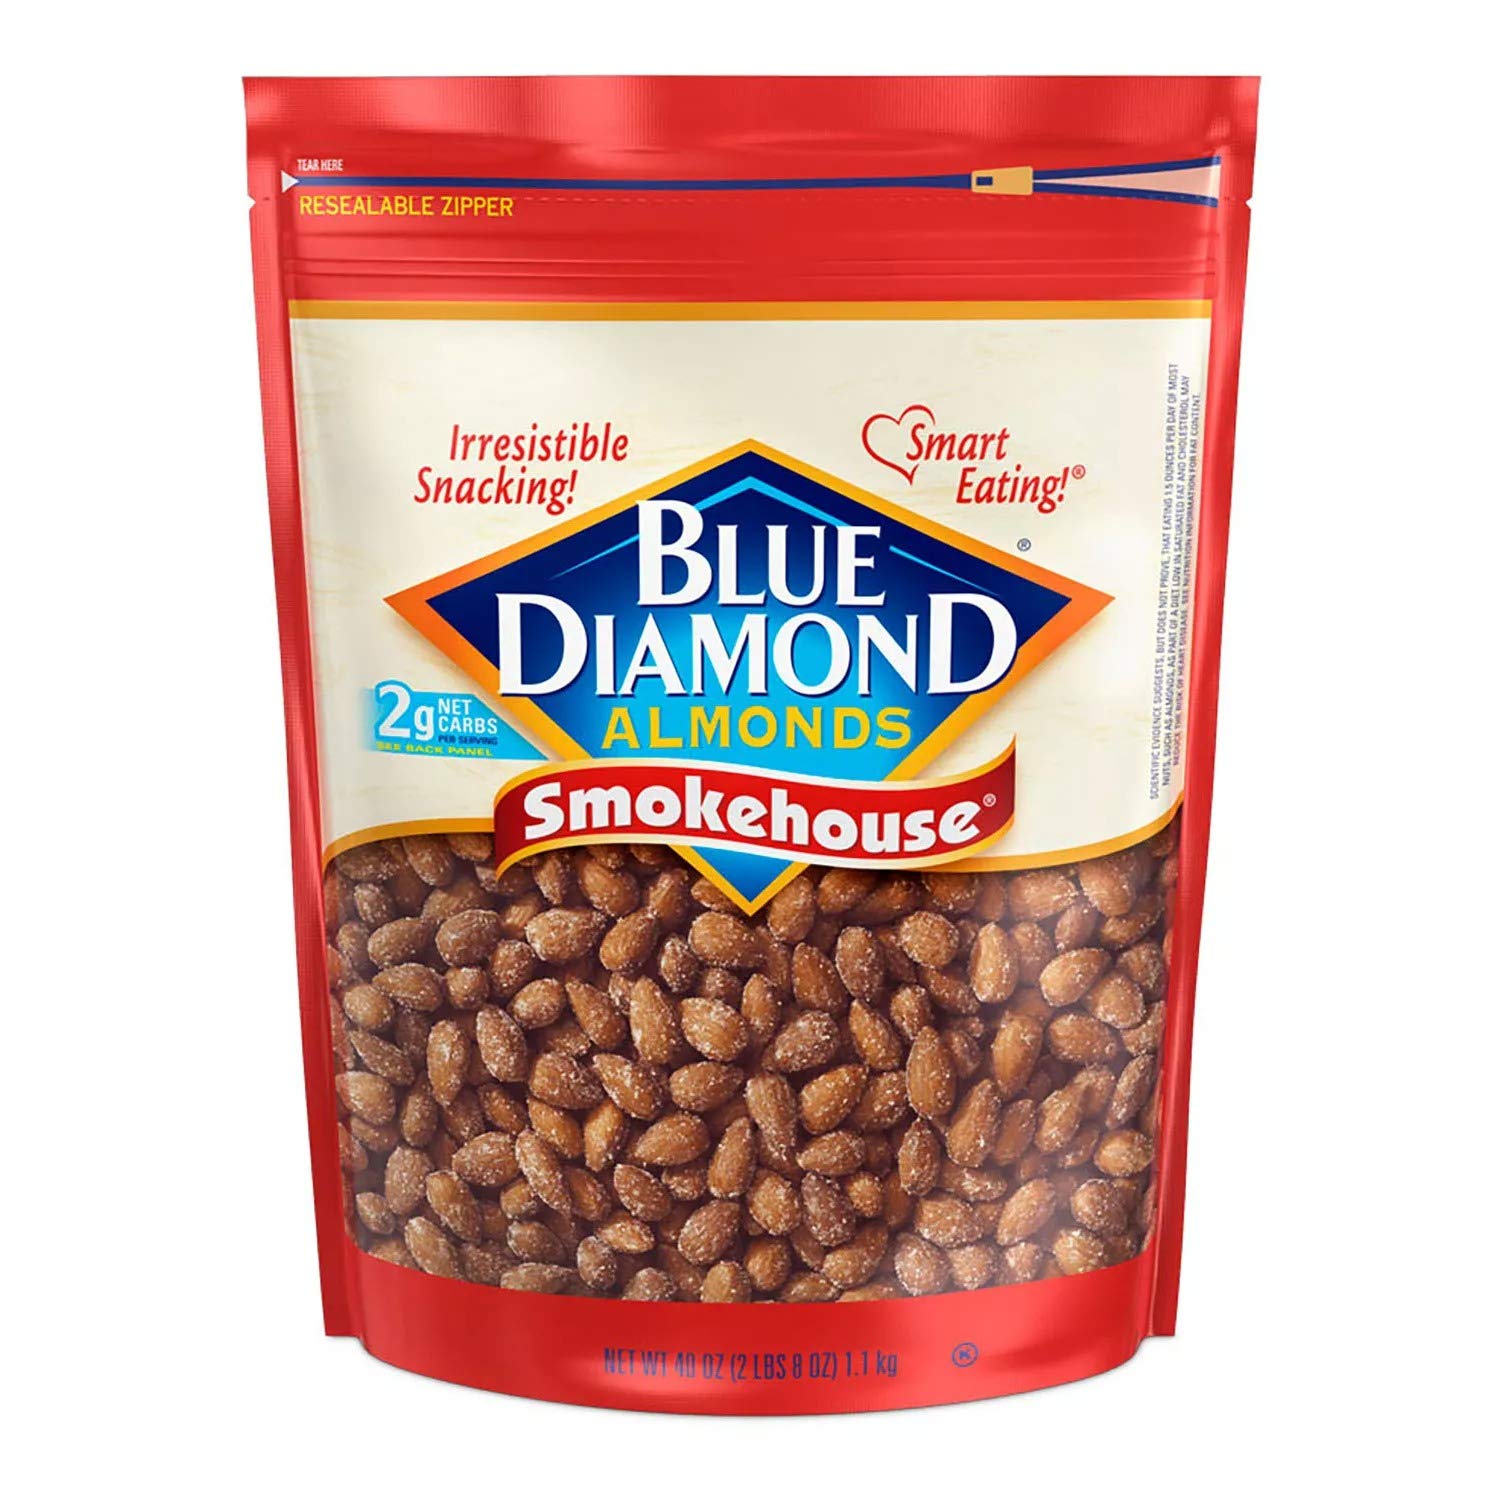 40-Oz Blue Diamond Almonds (Smokehouse) $7.80 w/ S&S + Free Shipping w/ Prime or on $25+